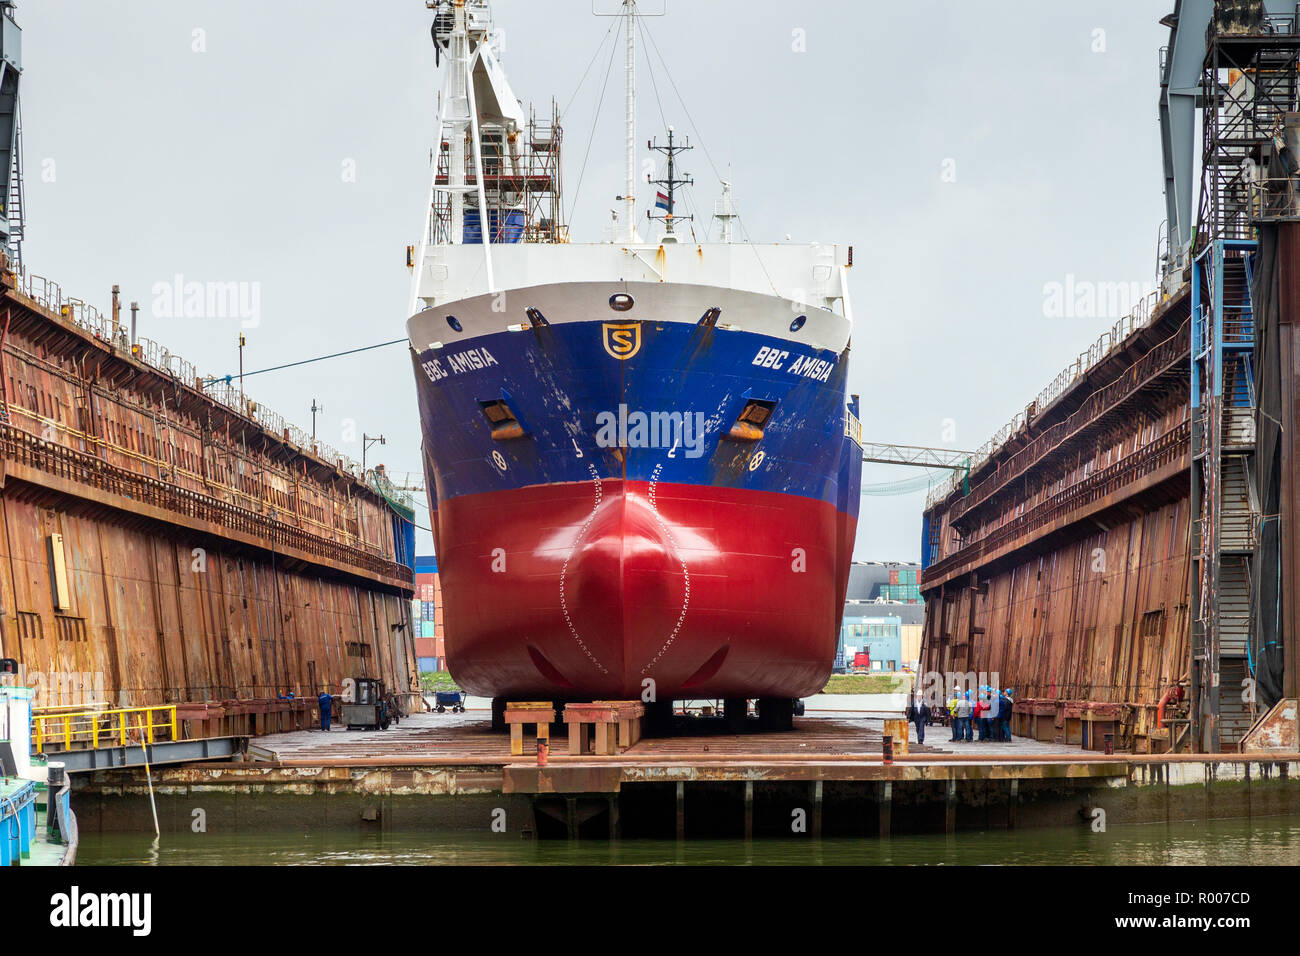 ROTTERDAM, Niederlande - Sep 5, 2015: Arbeiter Dock bei der Arbeit auf einem Schiff Rumpf in einem Schiff reparieren Trockendock. Stockfoto